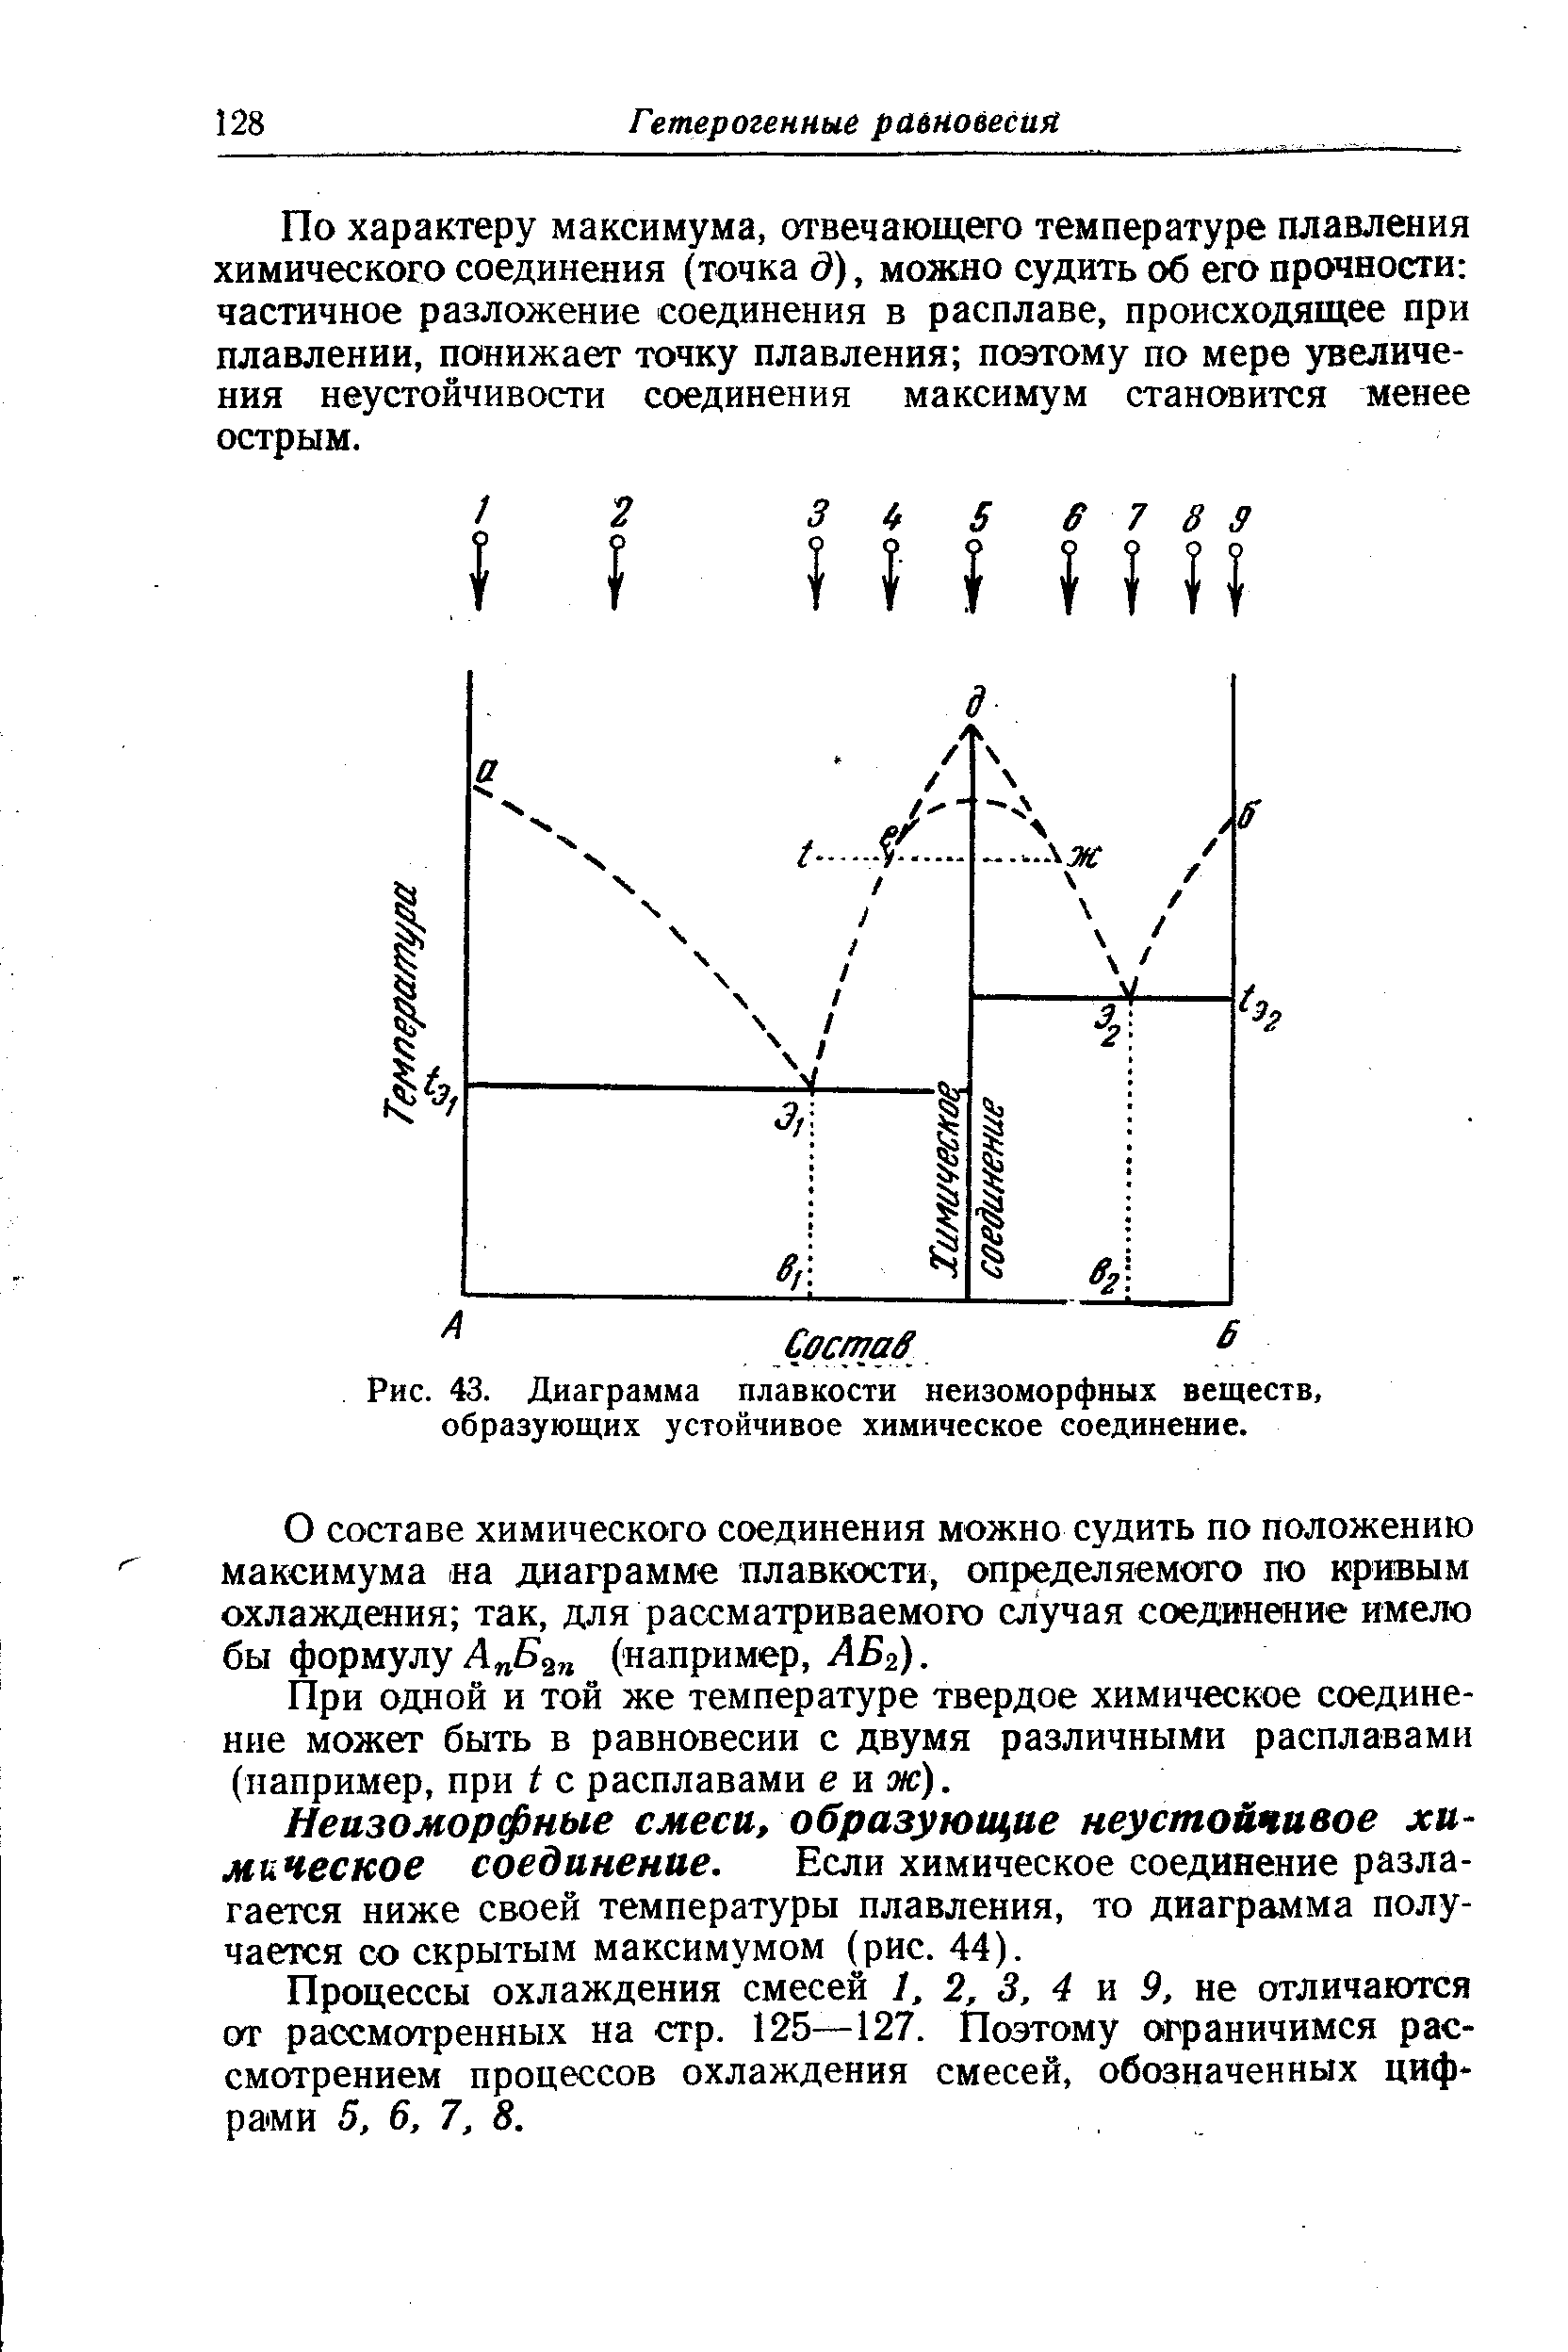 Неизоморфные смеси, образующие неустойчивое химическое соединение. Если химическое соединение разлагается ниже своей температуры плавления, то диаграмма получается со скрытым максимумом (рис. 44).